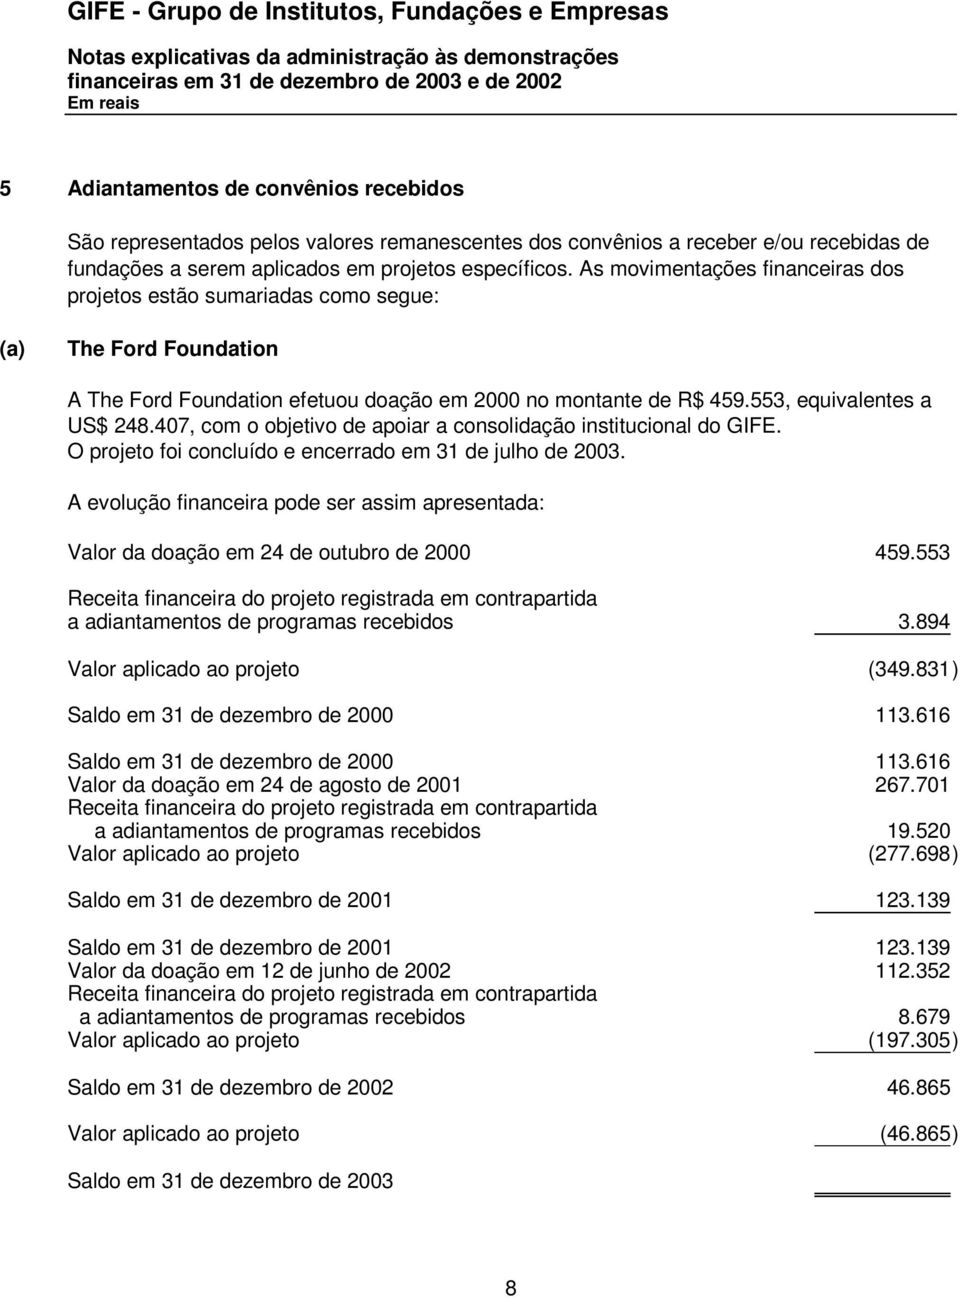 As movimentações financeiras dos projetos estão sumariadas como segue: (a) The Ford Foundation A The Ford Foundation efetuou doação em 2000 no montante de R$ 459.553, equivalentes a US$ 248.